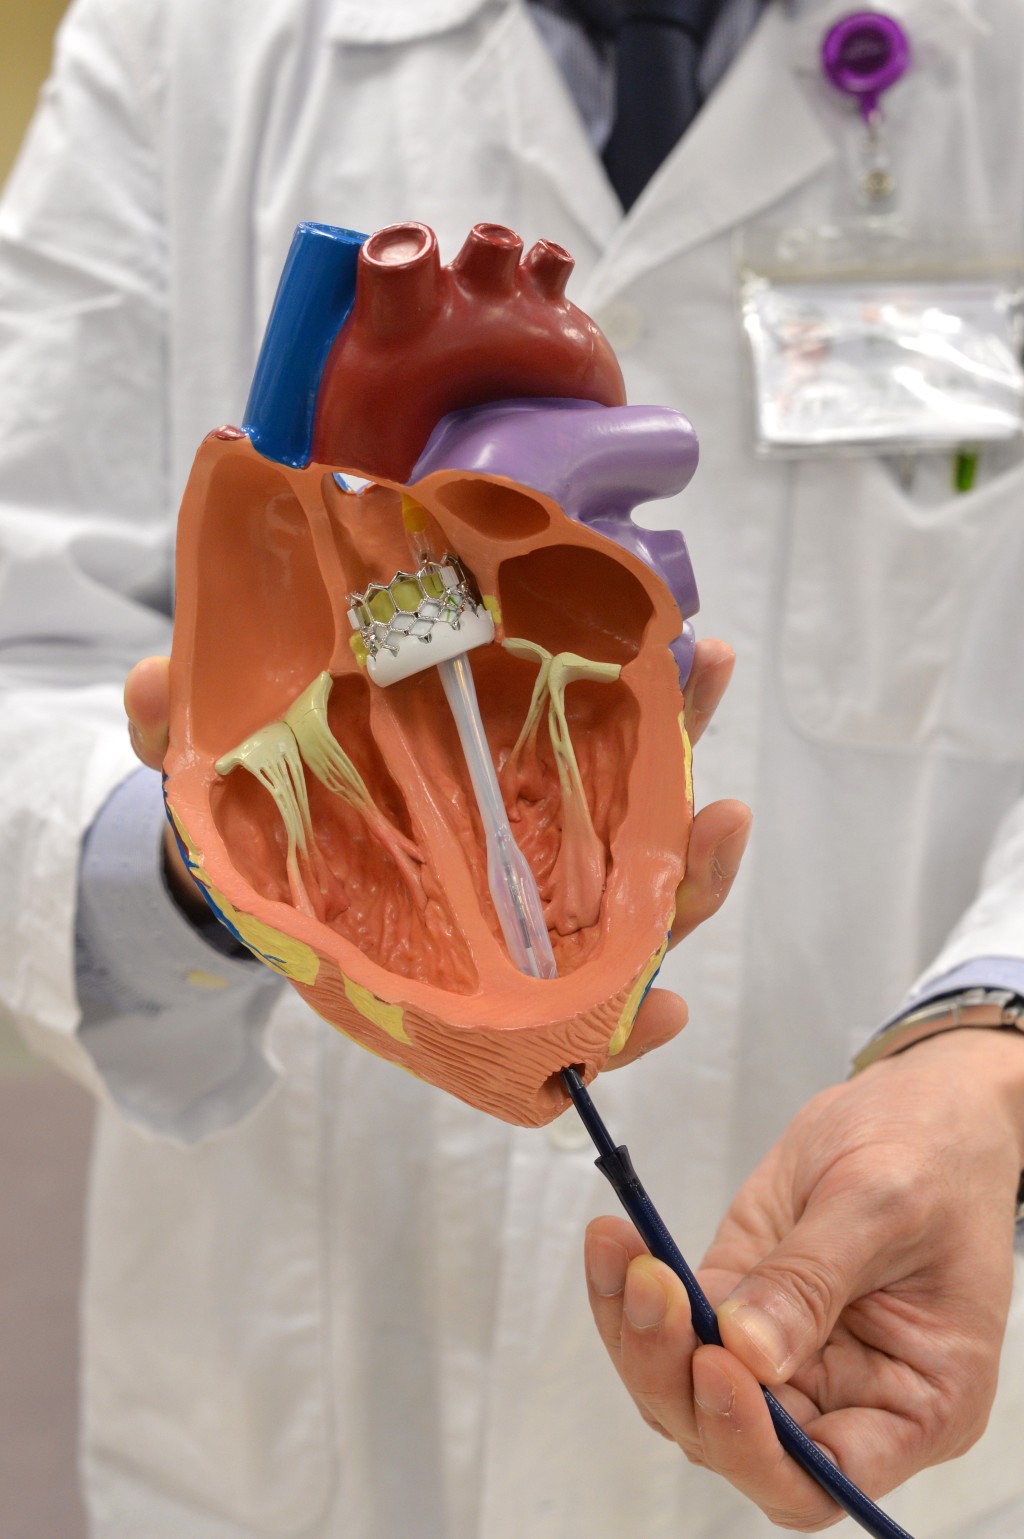 医生模拟主动脉心瓣手术。资料图片